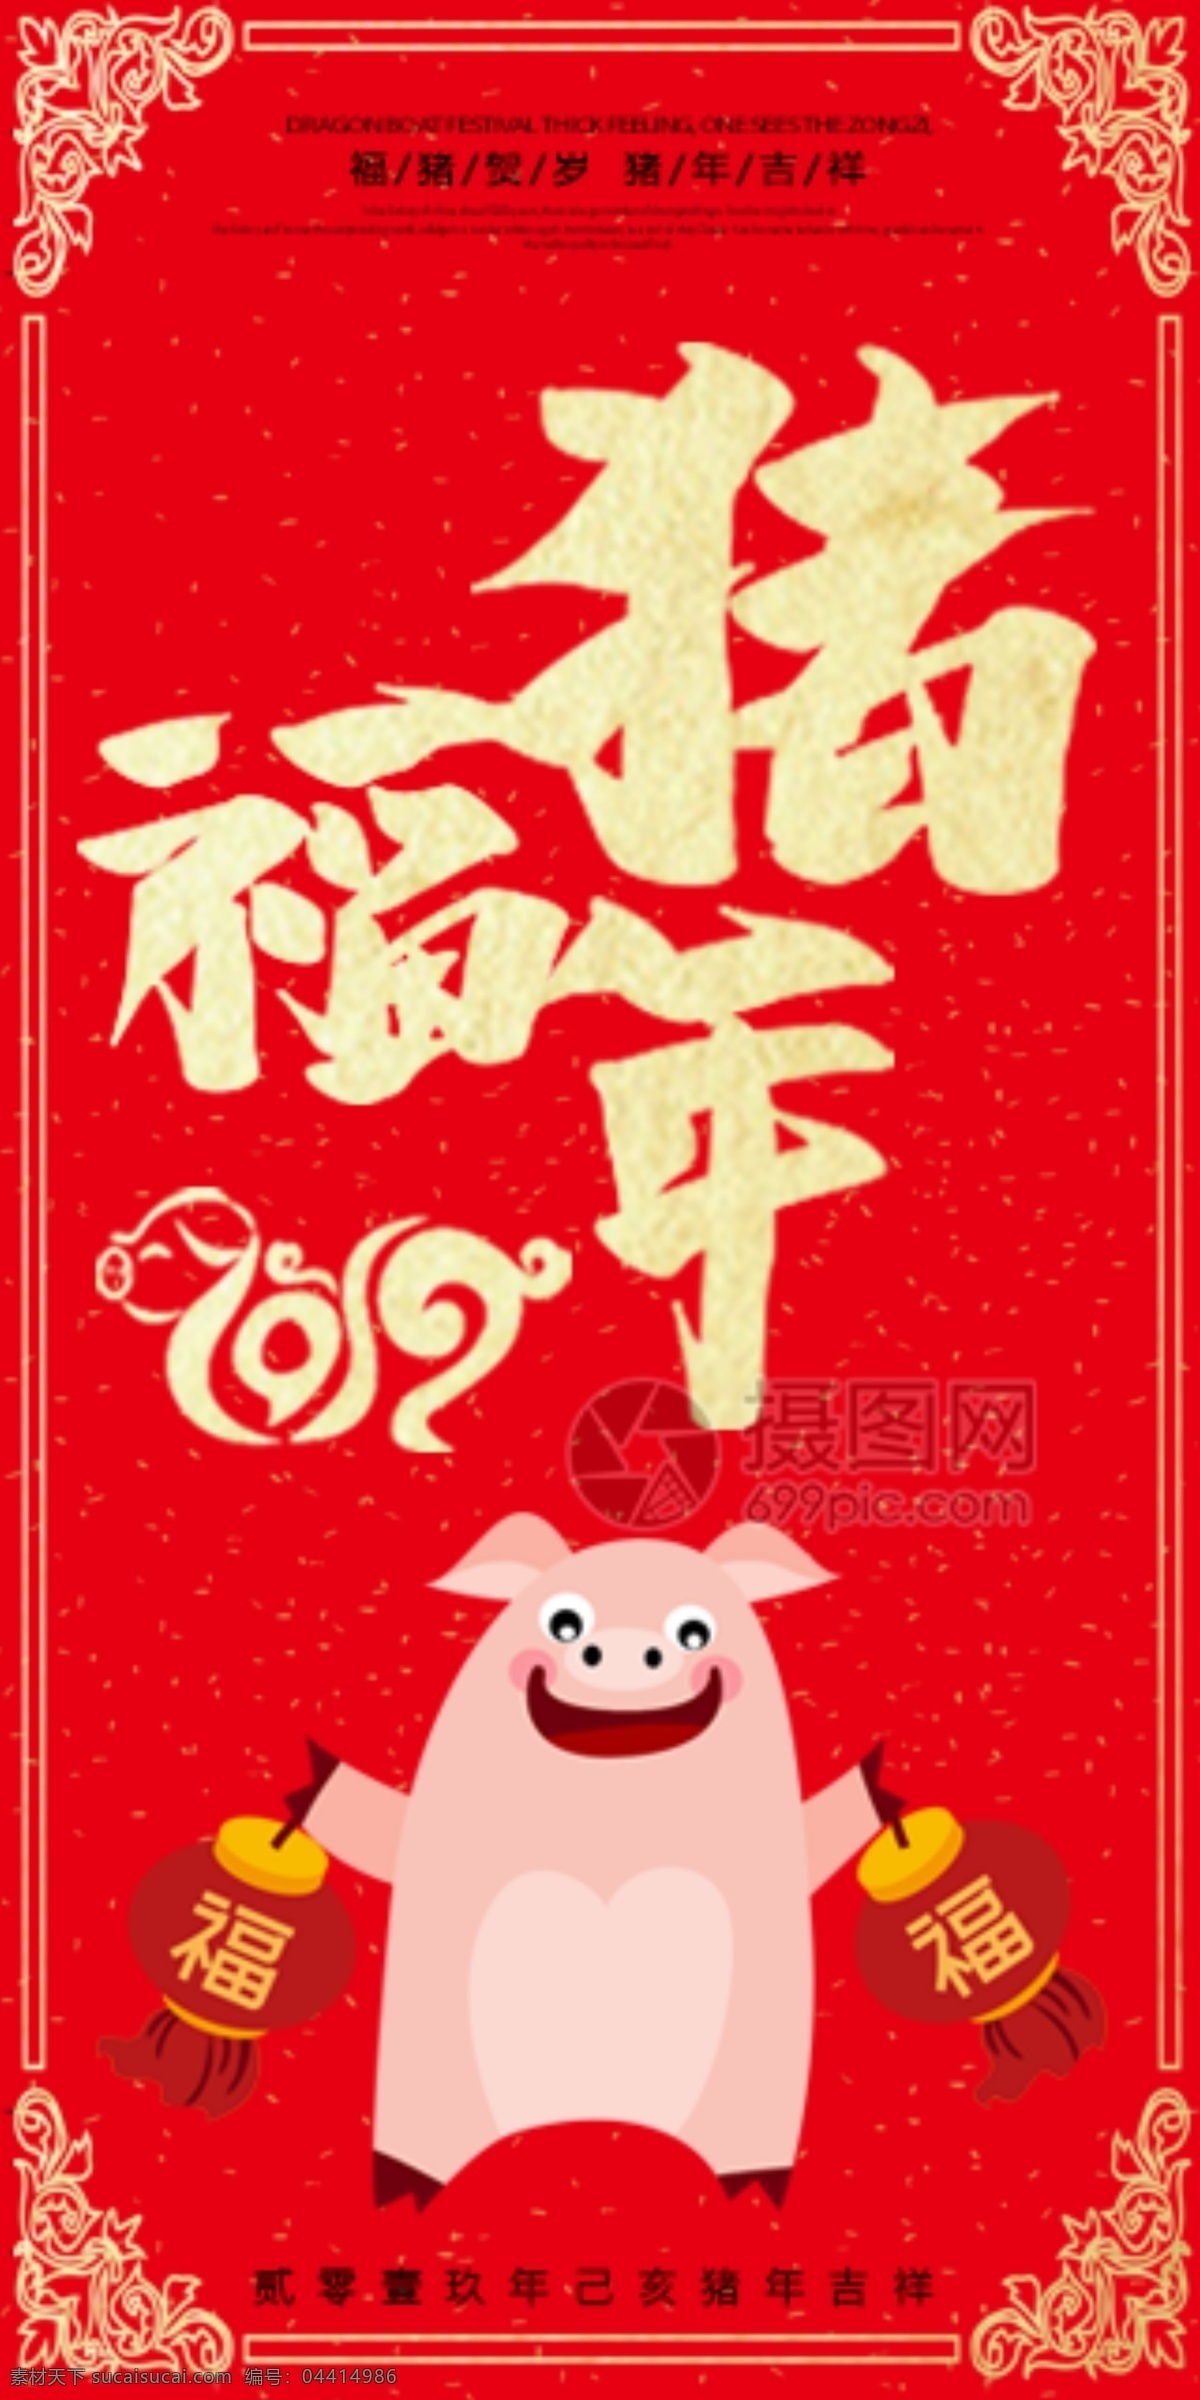 2019 猪年 新春 红包 福 猪年红包 新春红包 红包素材 红包设计 新年红 新年红包 福猪年